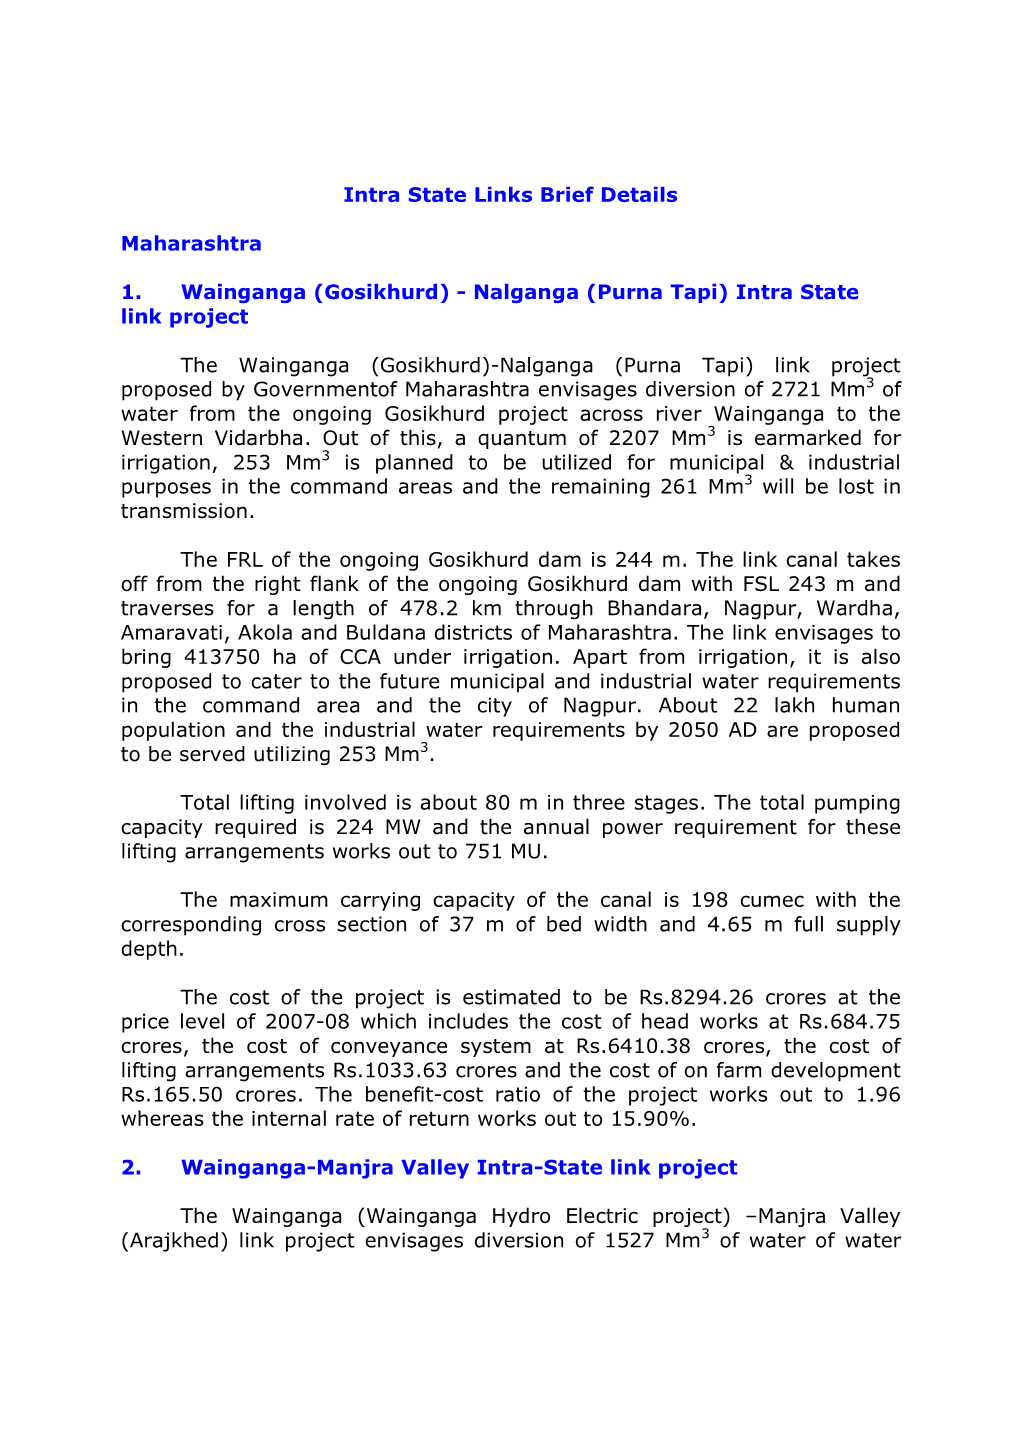 Intra State Links Brief Details Maharashtra 1. Wainganga (Gosikhurd)